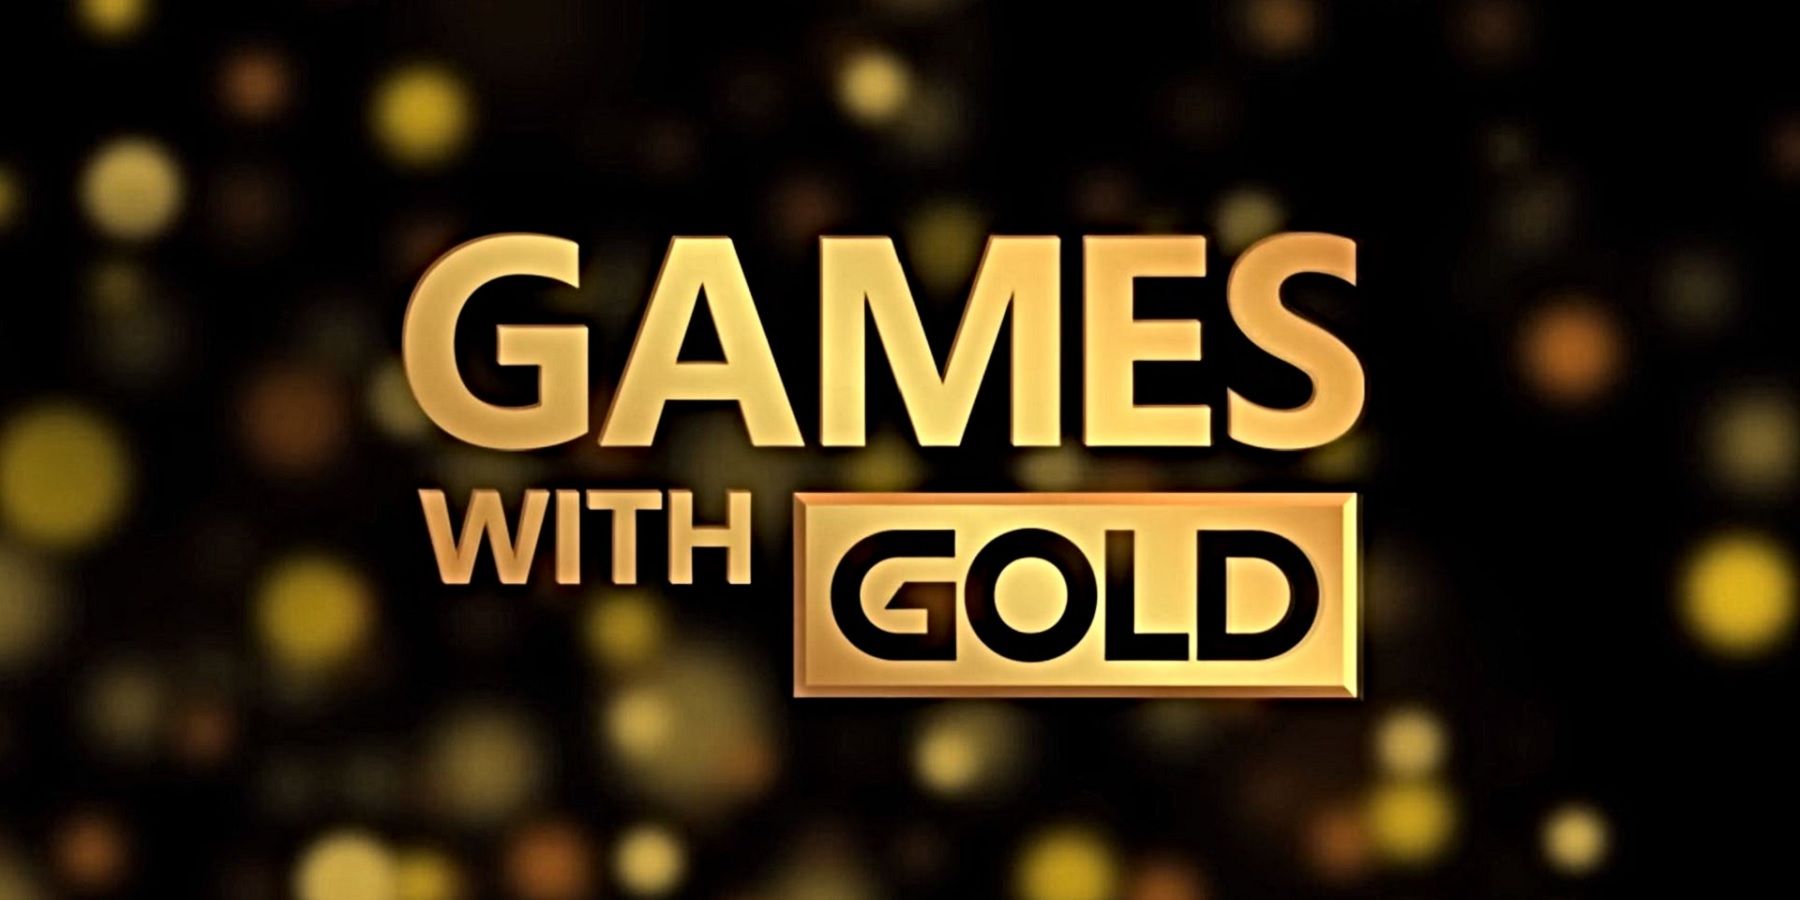 Бесплатные игры Xbox с золотом в октябре 2021 года раскрыли